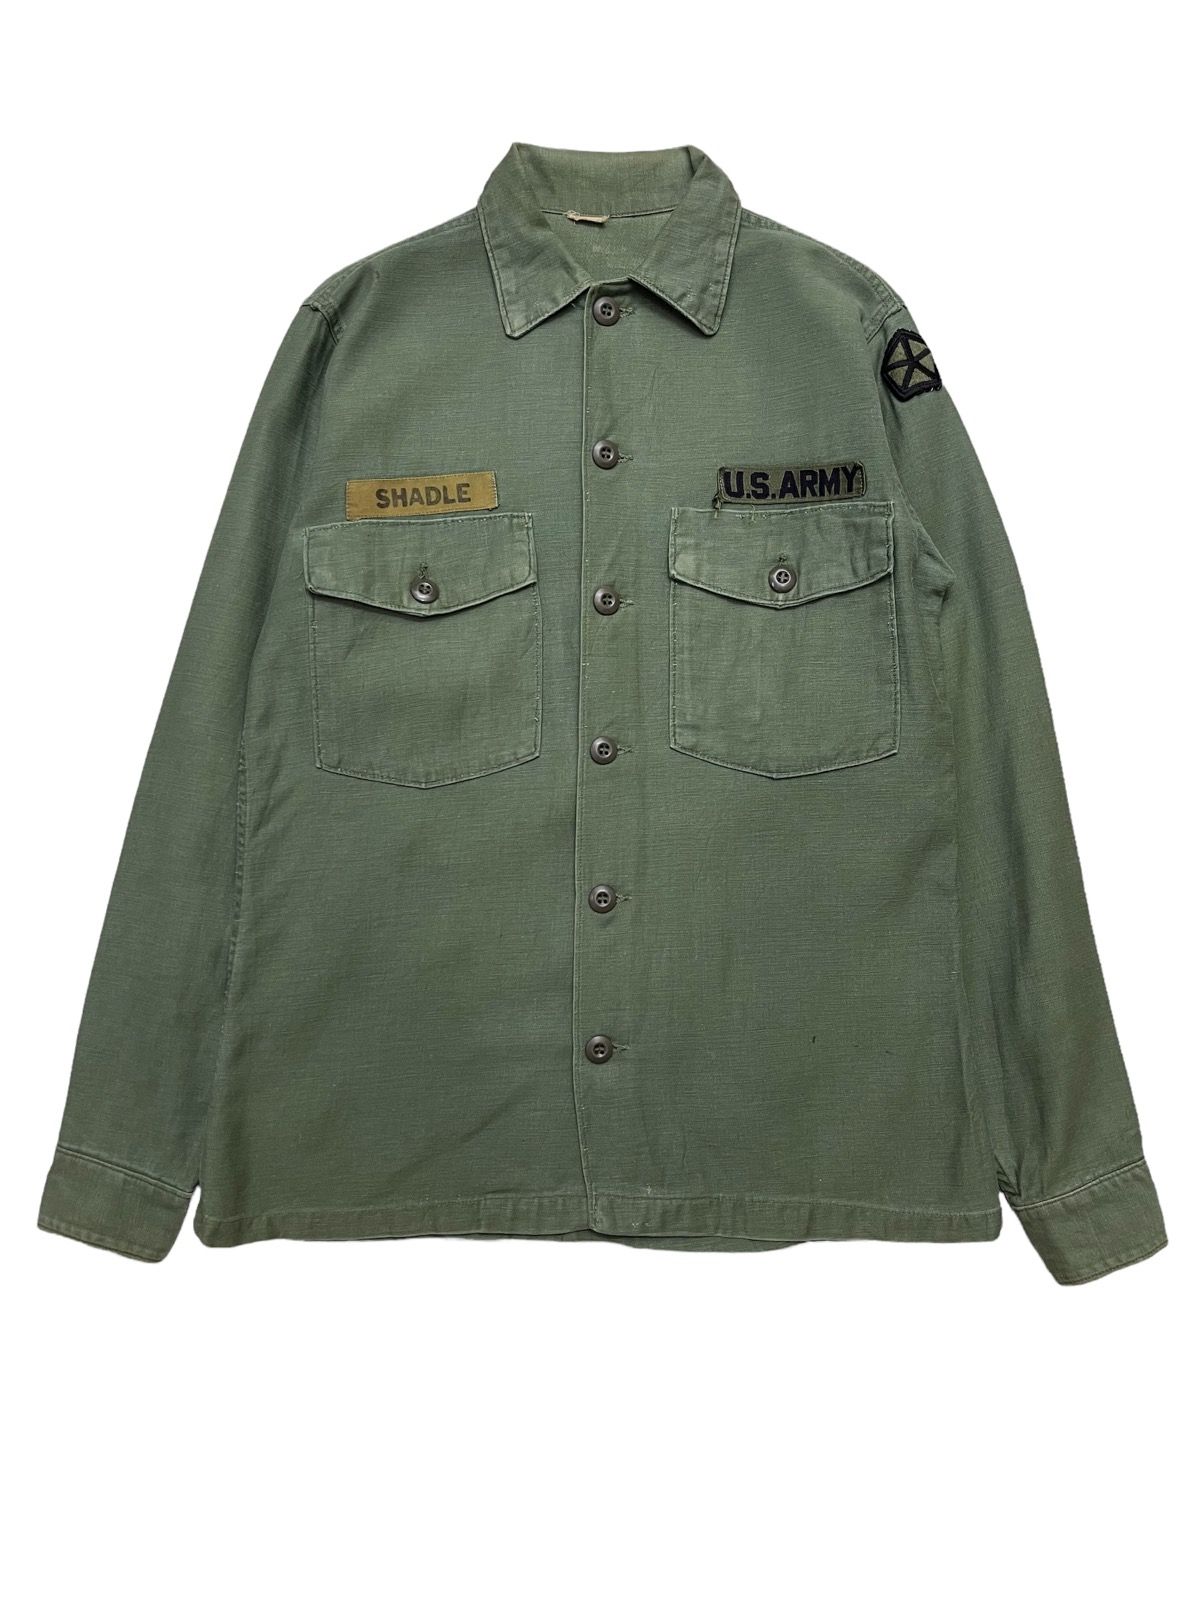 Vintage Vintage 70s OG-107 US military Utility John Lennon Shirt | Grailed